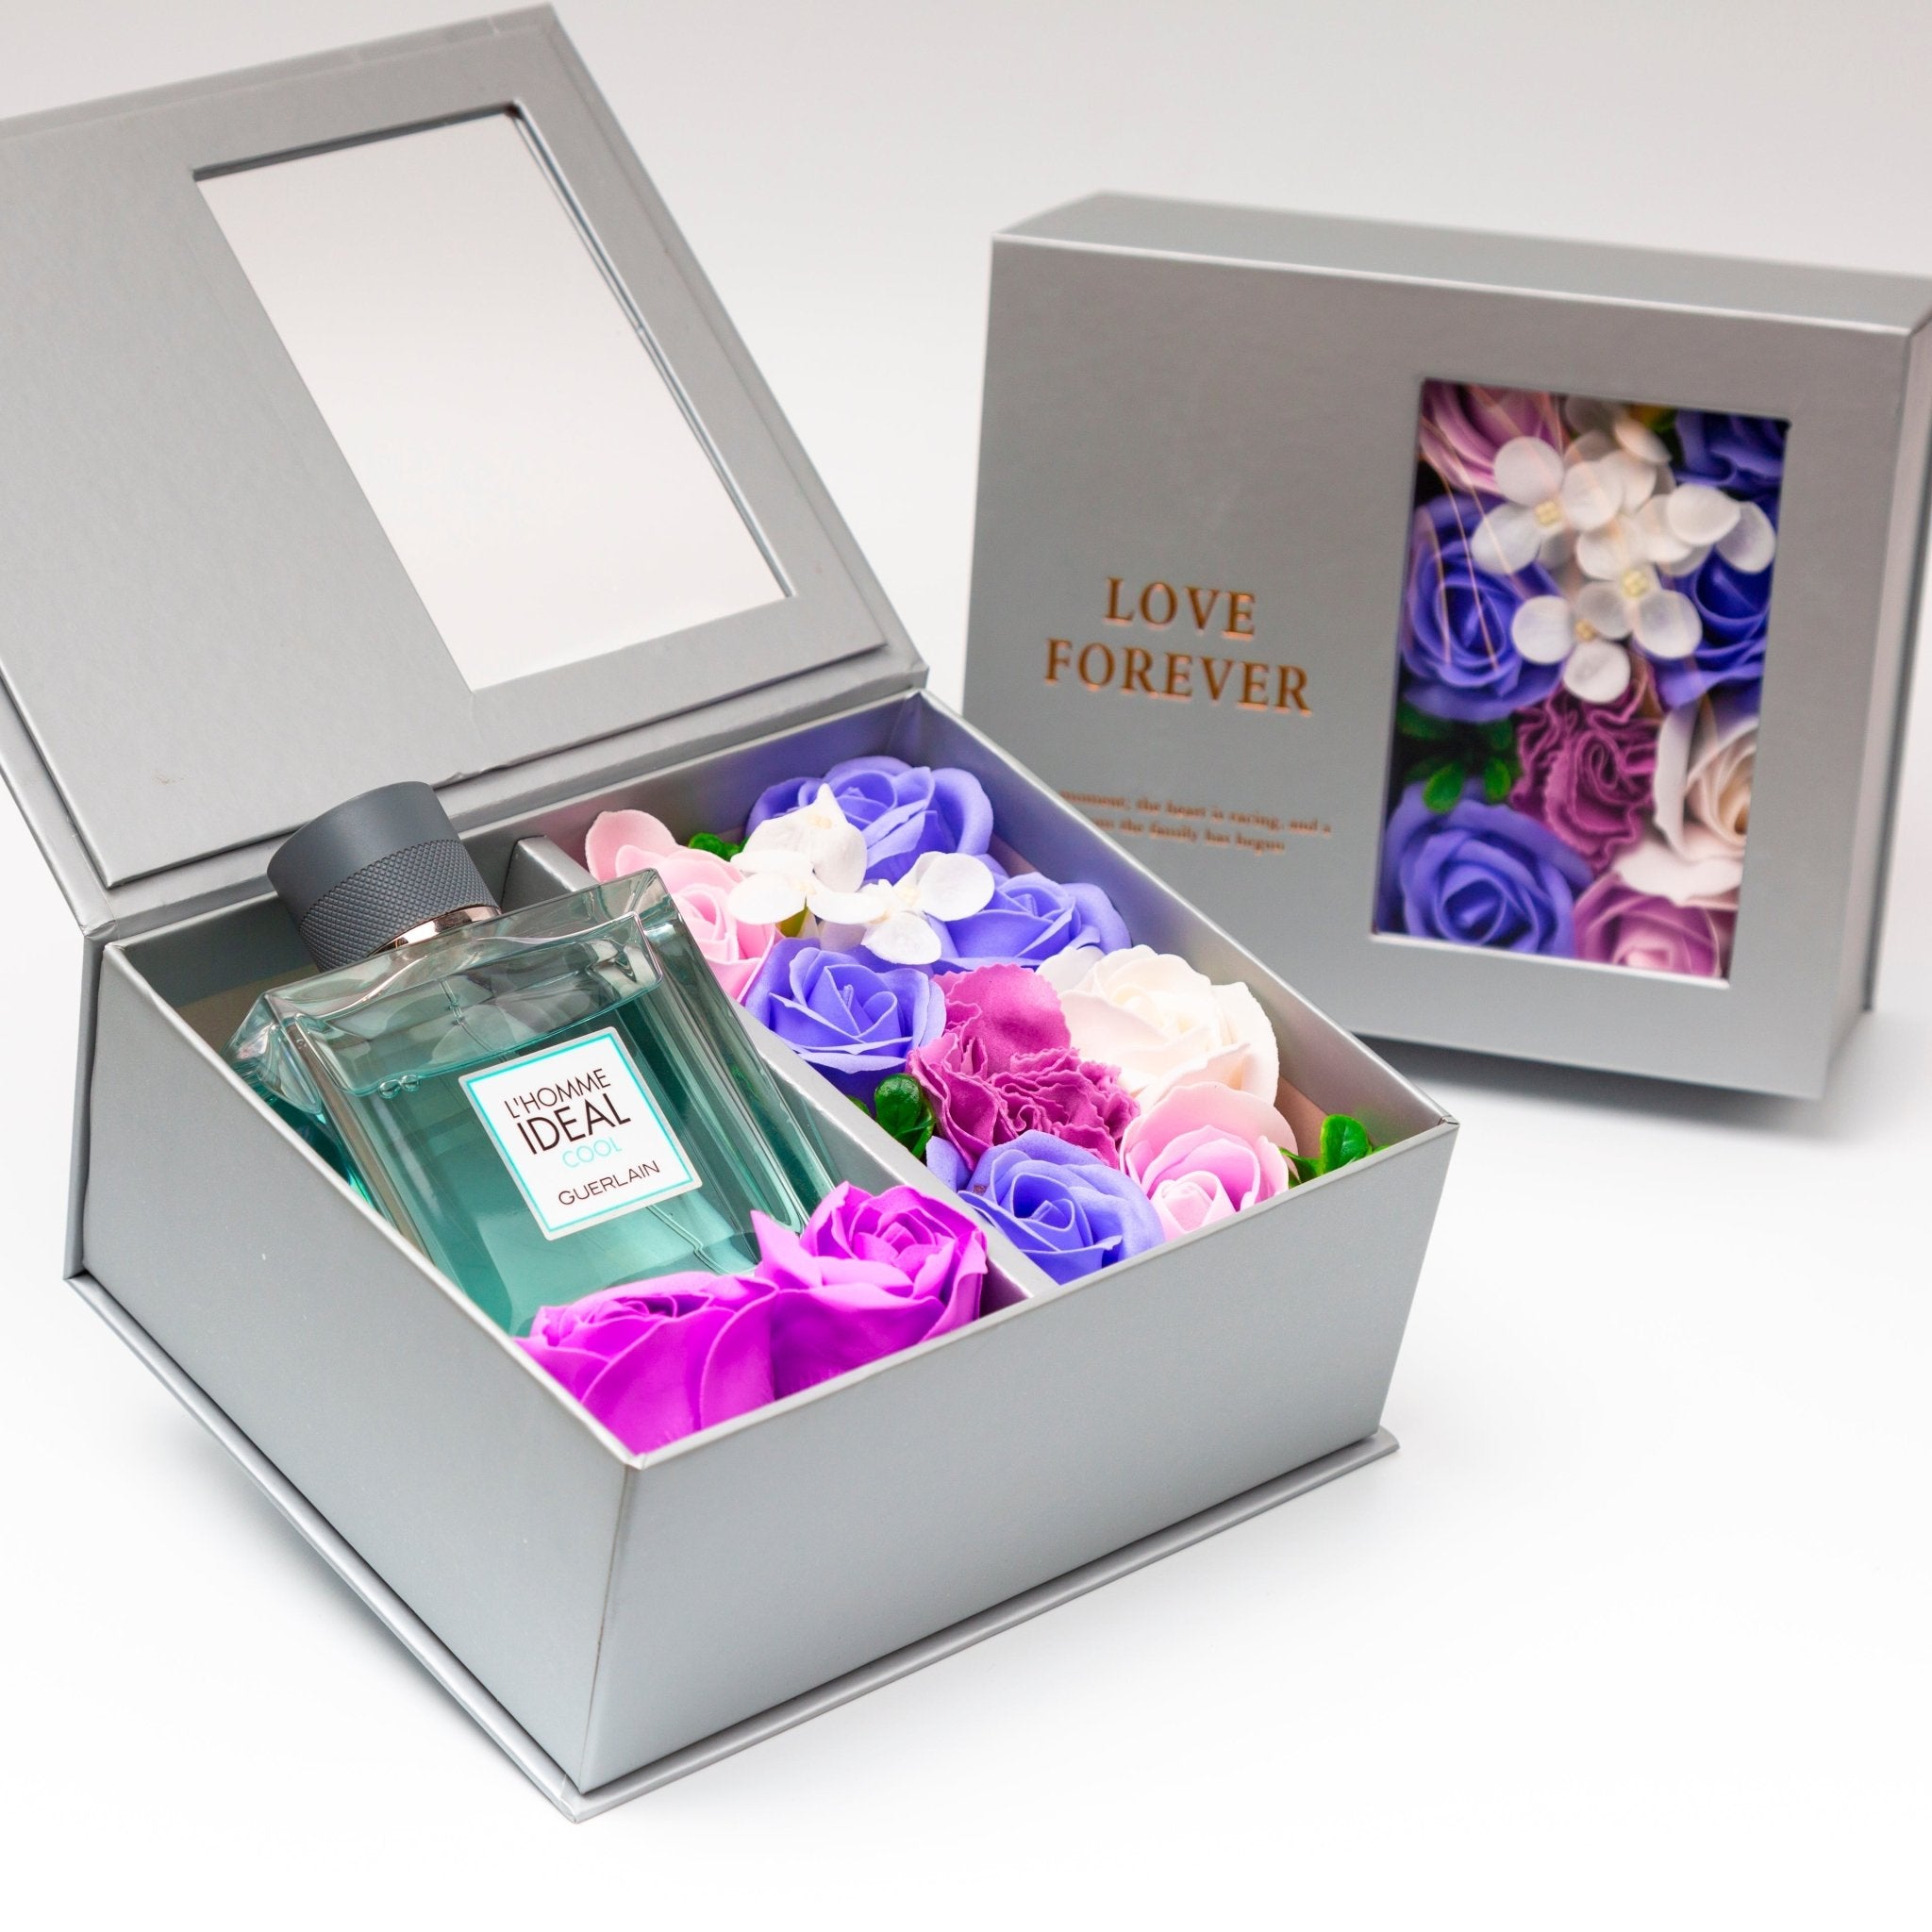 Flower Box - Perfume Gift For Men 1 - #shoFlower Box - Perfume Gift For Men 1p_name#Flower Box - Perfume Gift For Men 1Gift Boxes & TinsTakreemTakreem.joMenPerfumeFlower Box - Perfume Gift For Men 1 - Takreem.jo